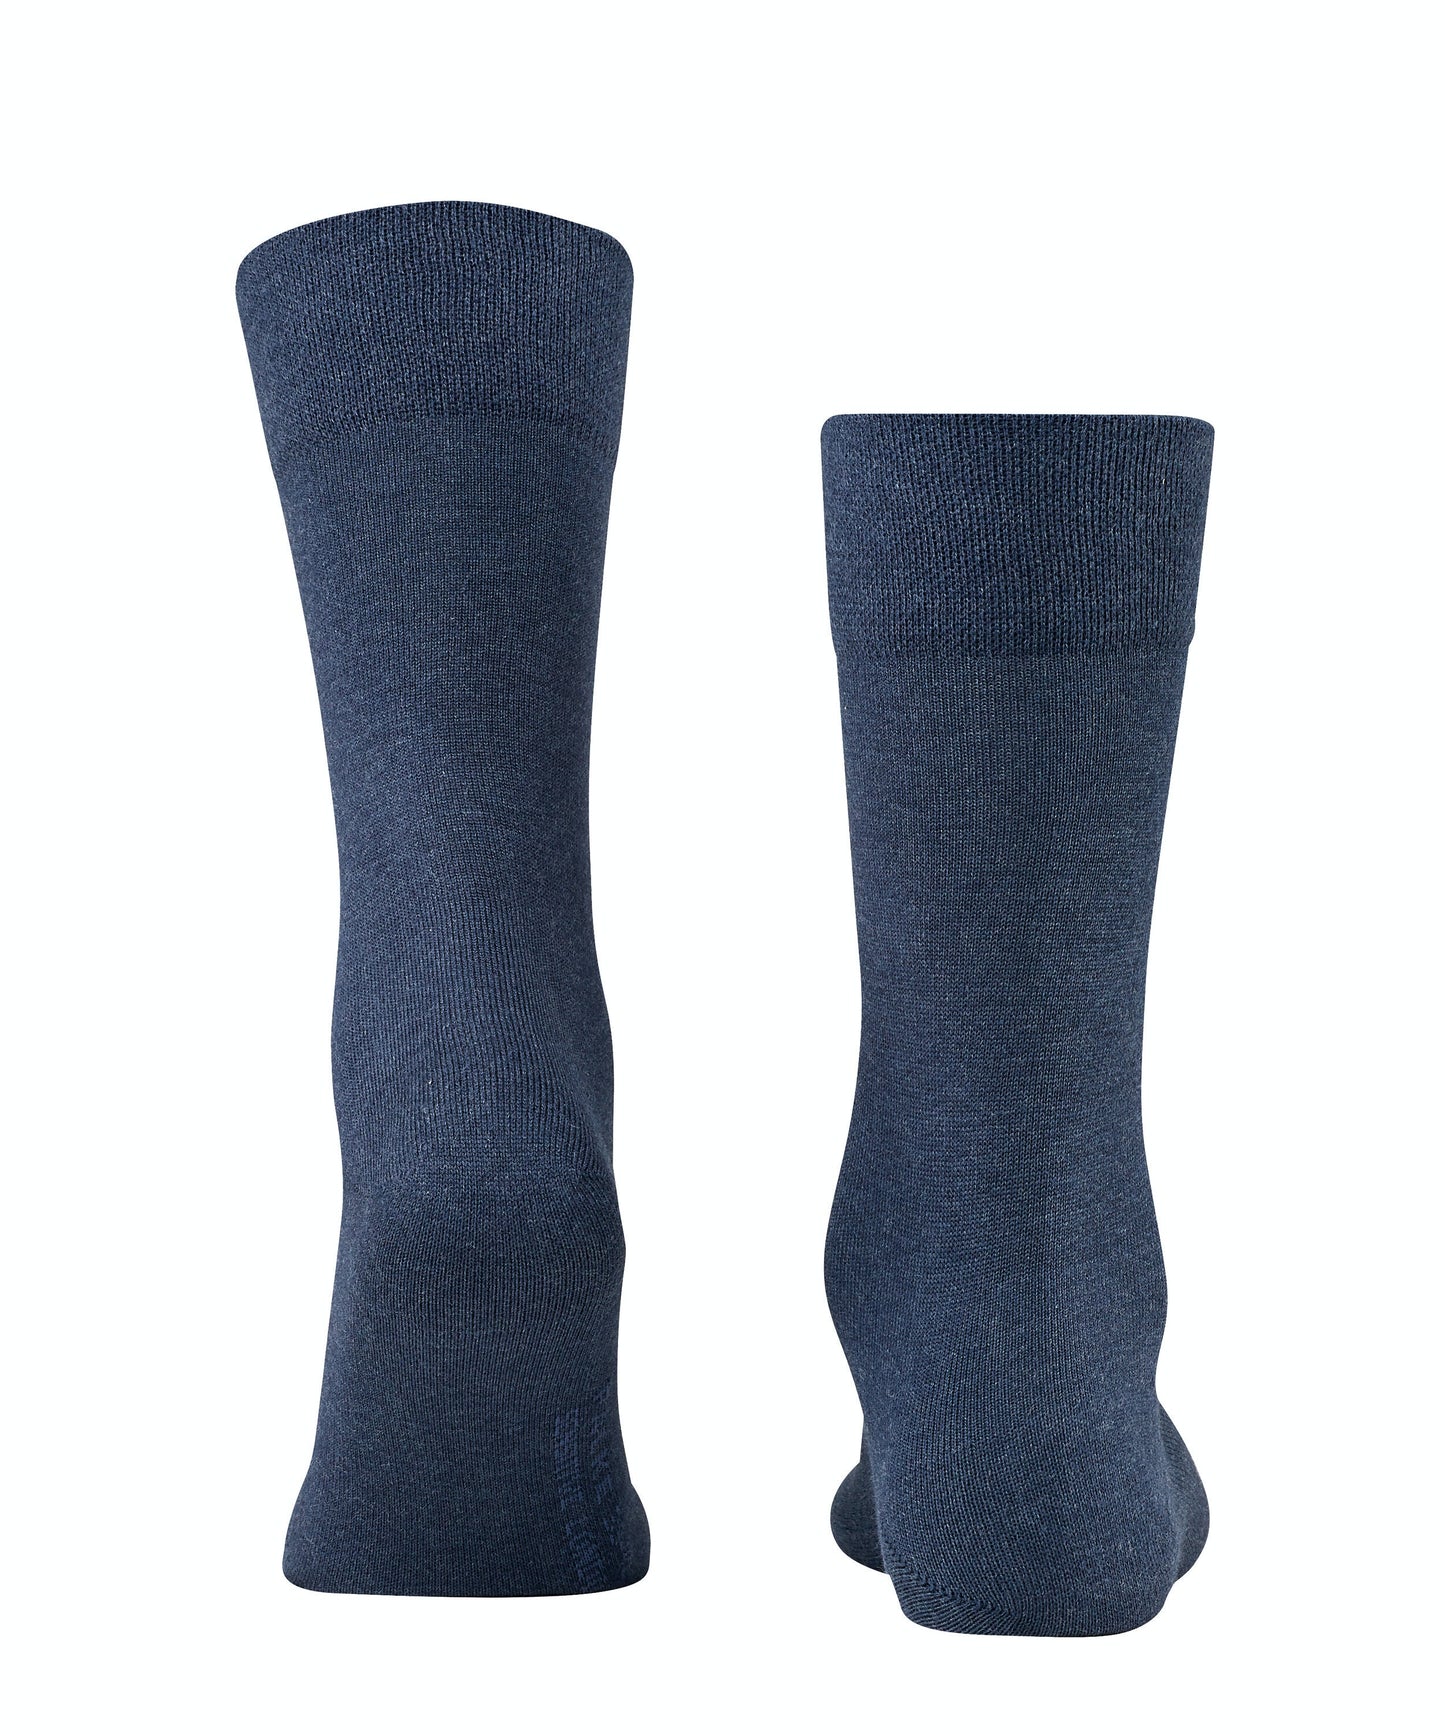 FALKE Sensitive London Socks Navy Melange